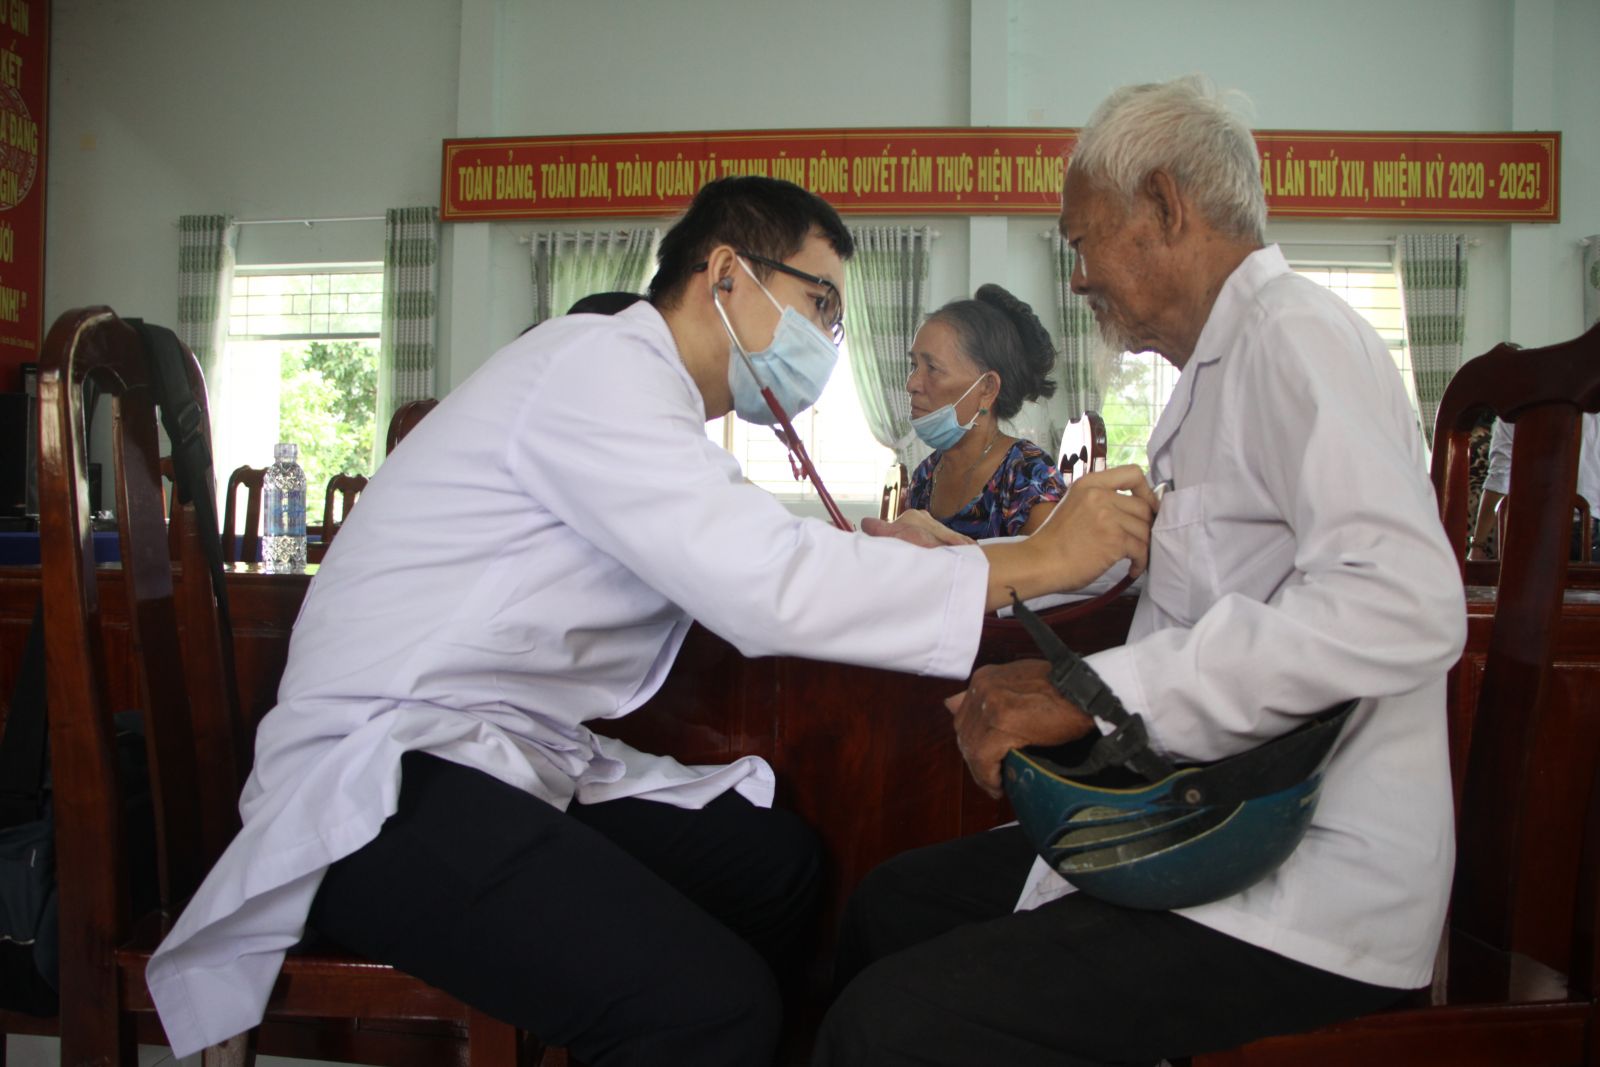 Bác sĩ Bệnh viện Nguyễn Tri Phương khám bệnh miễn phí cho hộ nghèo, cận nghèo tại 2 xã Thanh Vĩnh Đông, Thuận Mỹ, huyện Châu Thành